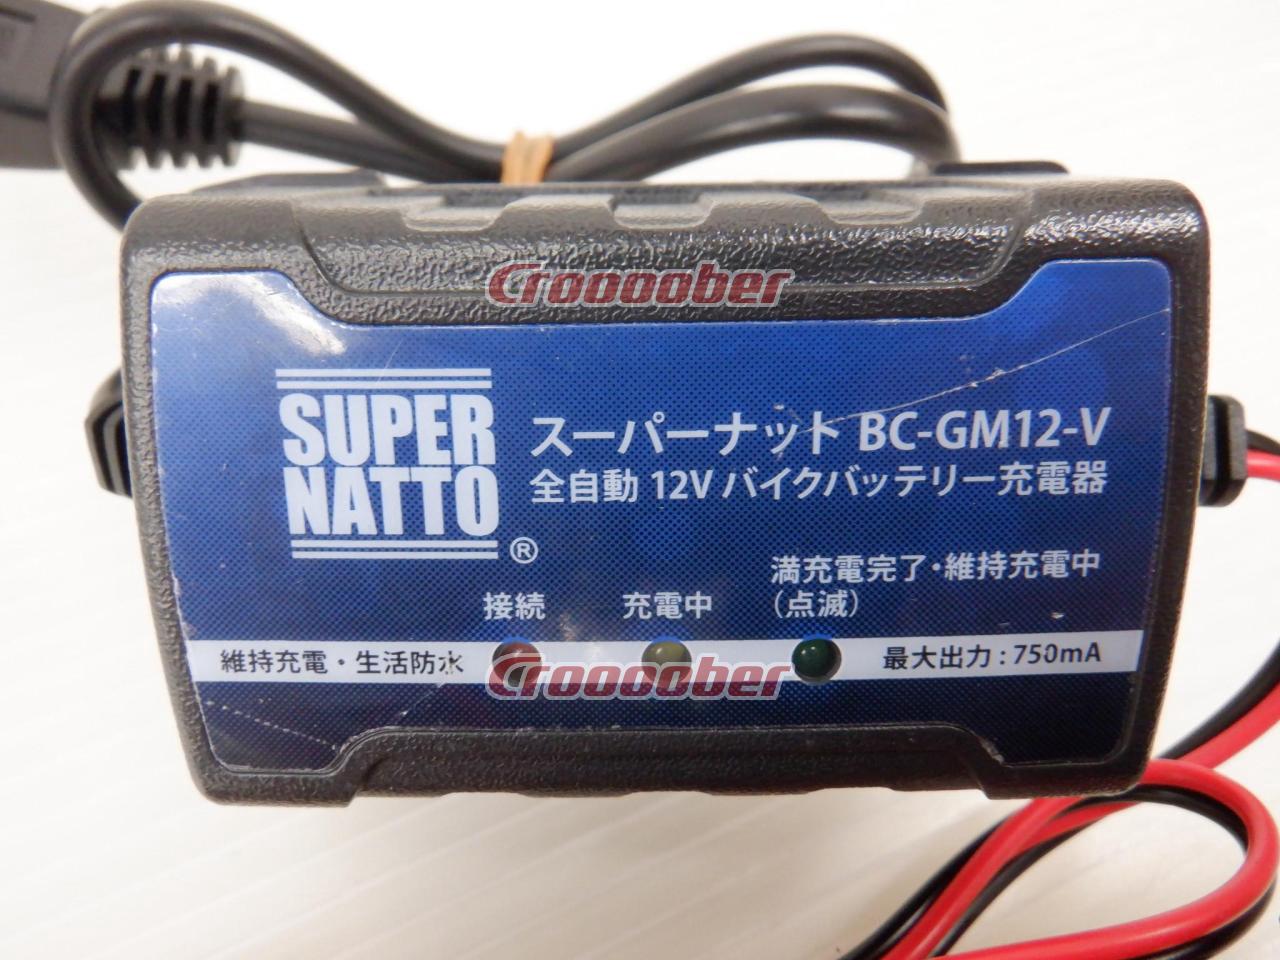 893円 新作ウエア SUPER NATTO NATTO:スーパーナット 全自動12Vバイクバッテリー充電器